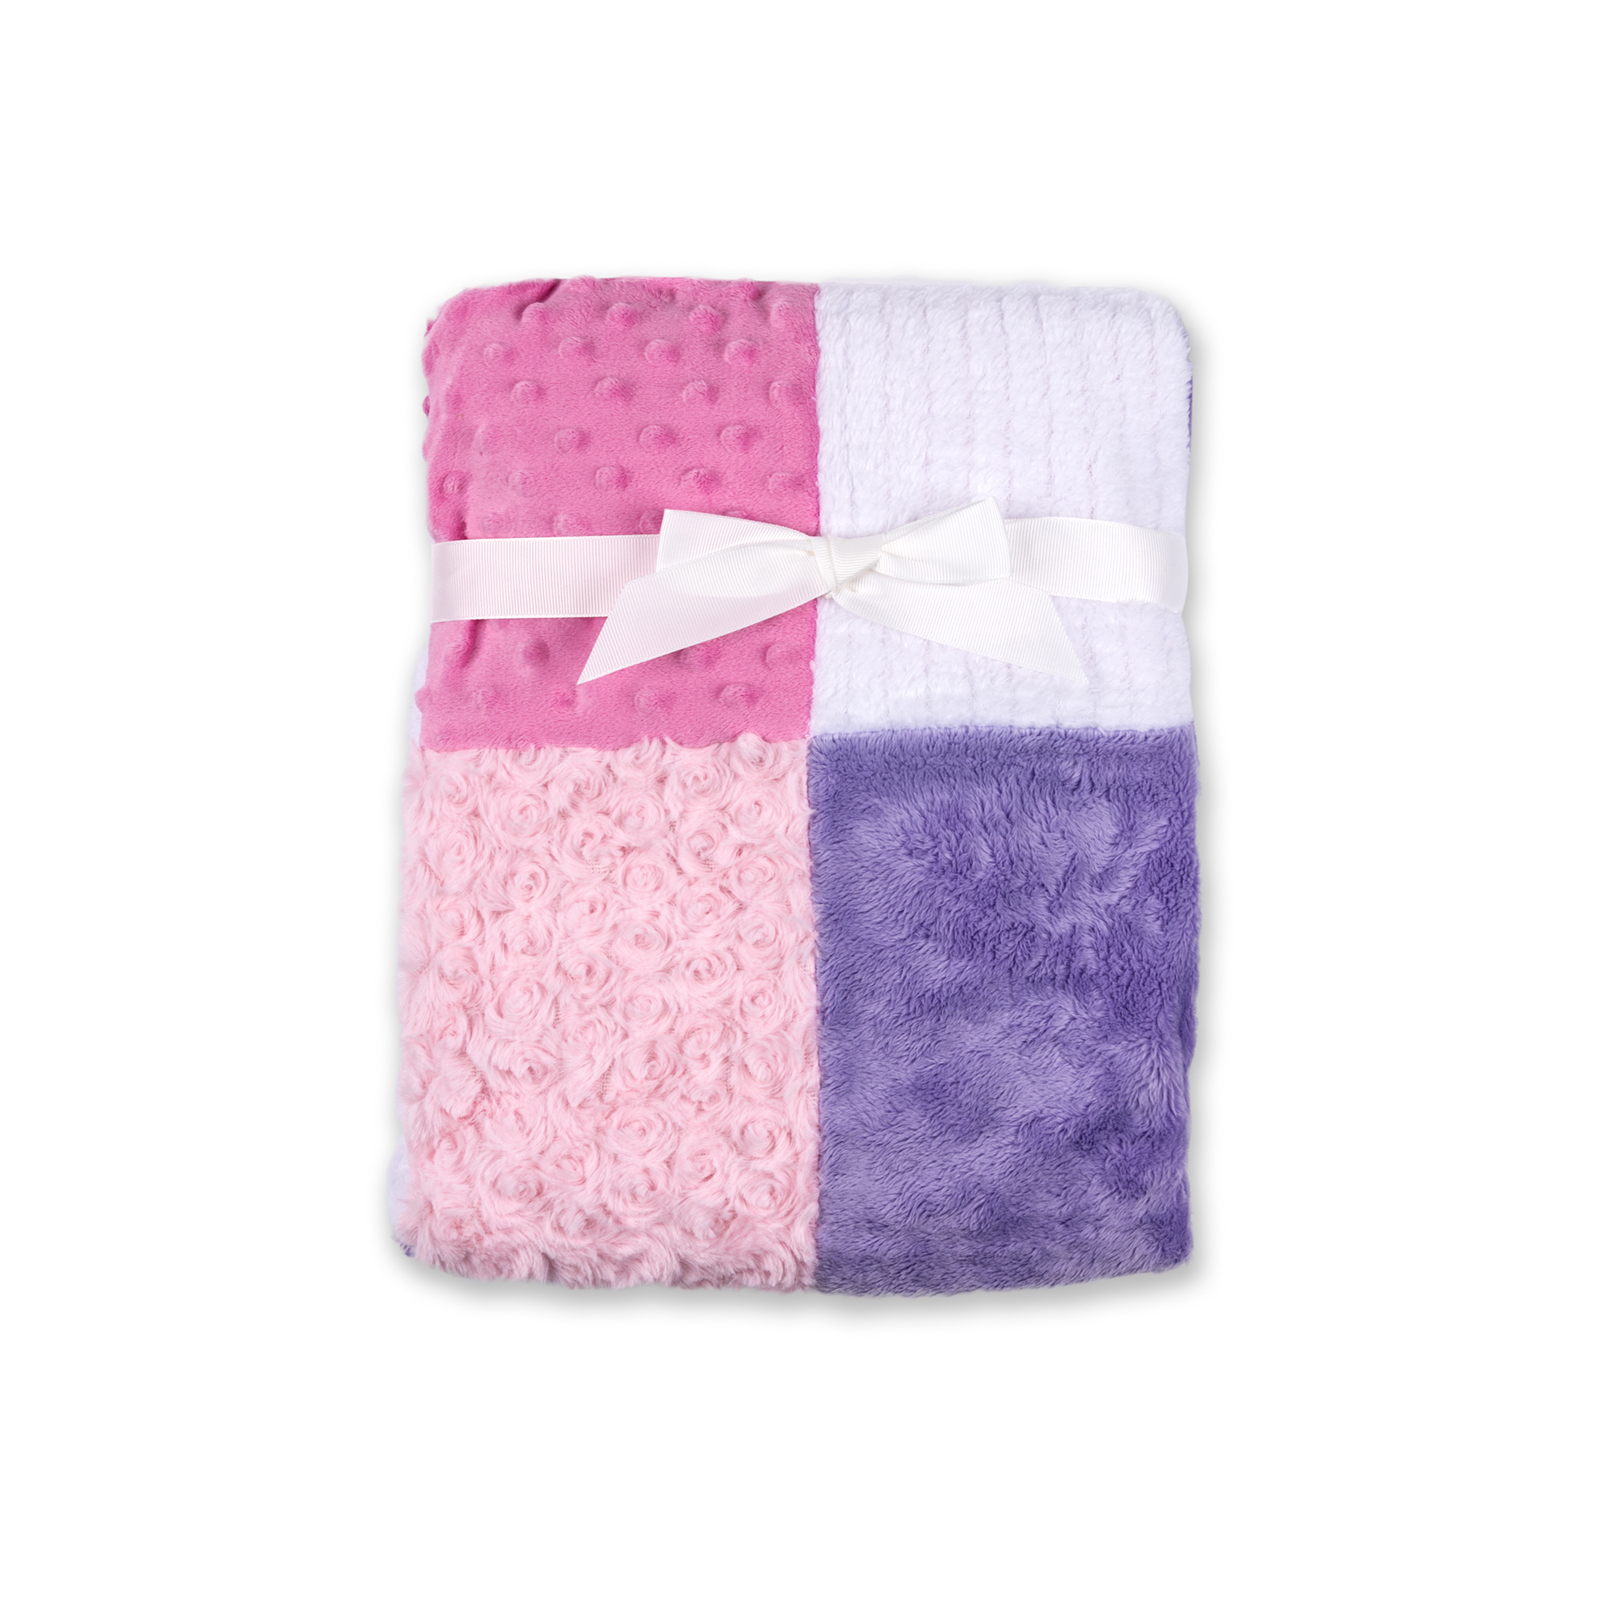 Детское одеяло Luvable Friends из различных видов тканей для девочек (50443.F)